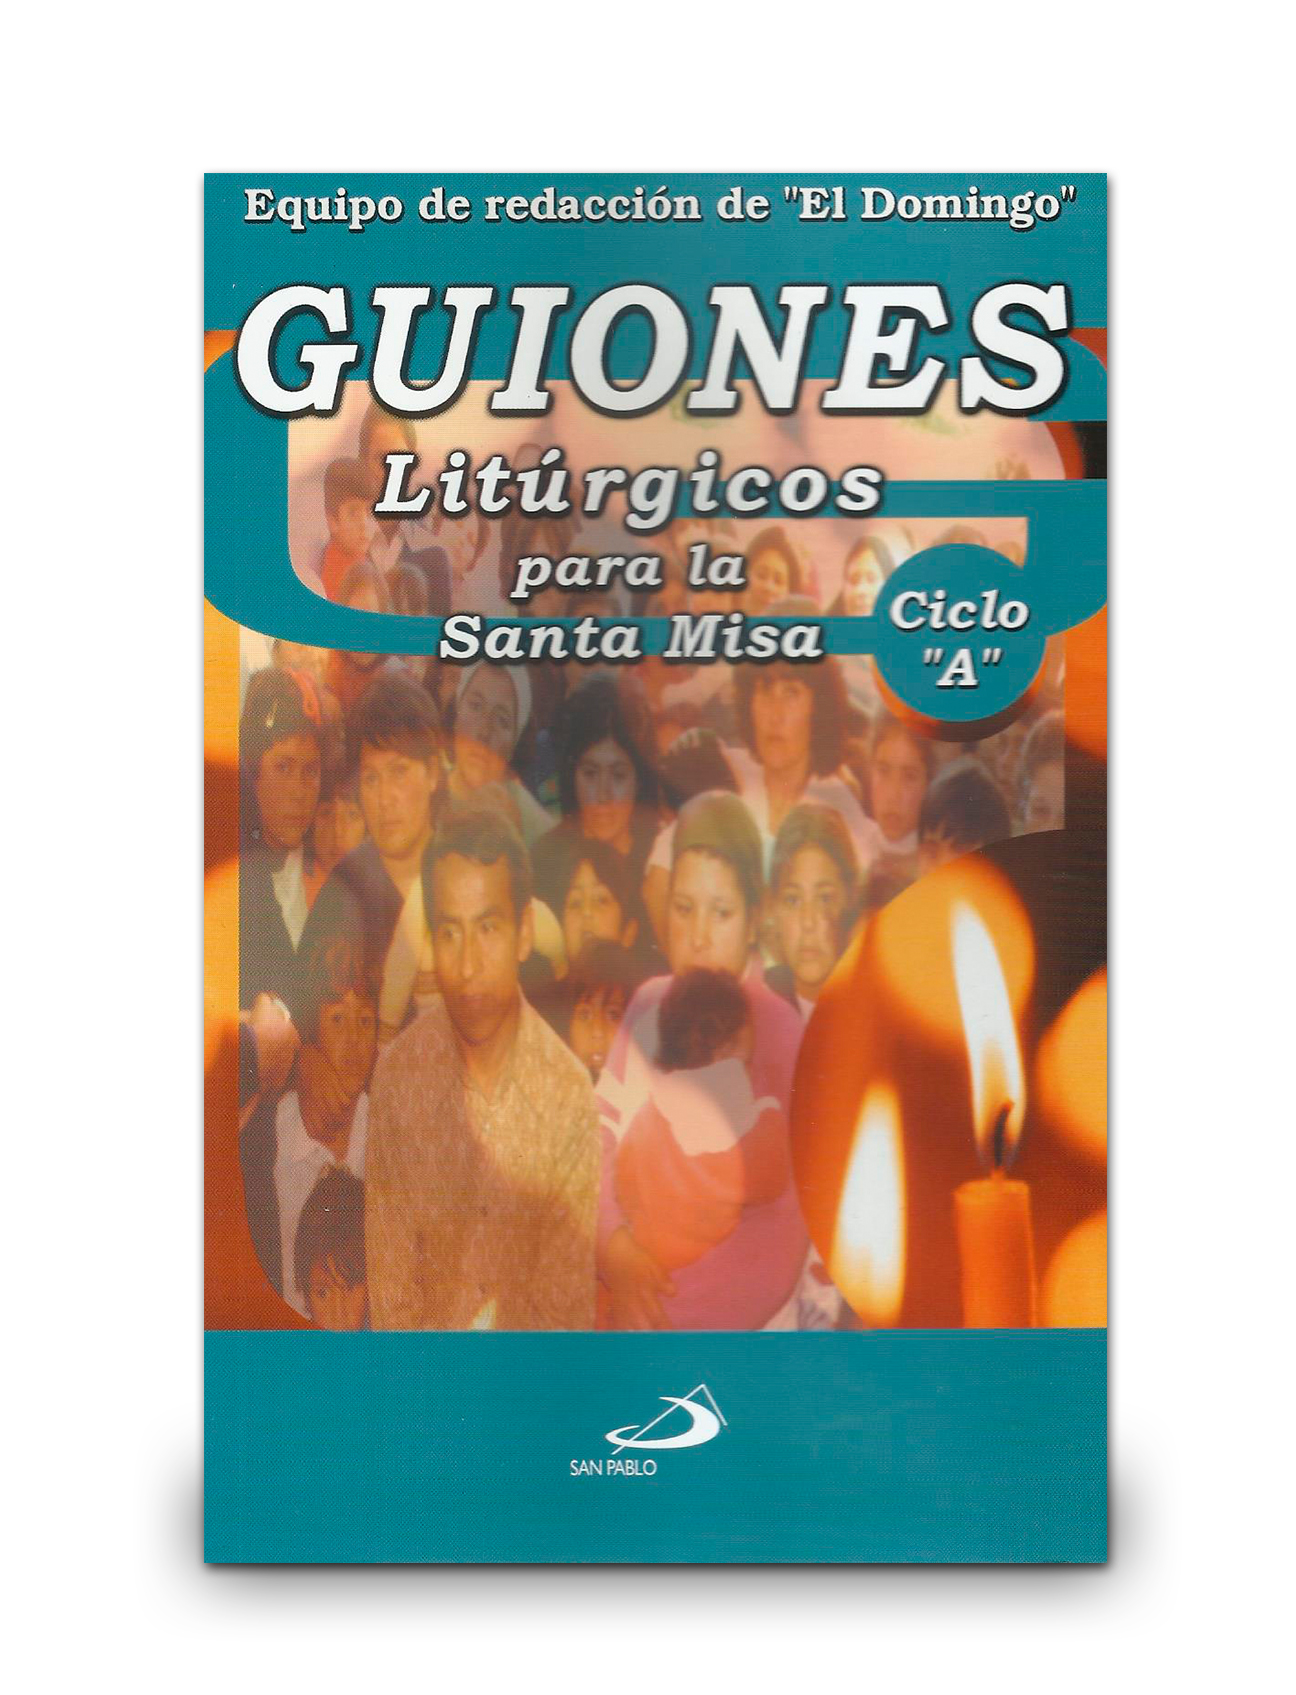 GUIONES LITÚRGICOS PARA LA SANTA MISA / Ciclo A